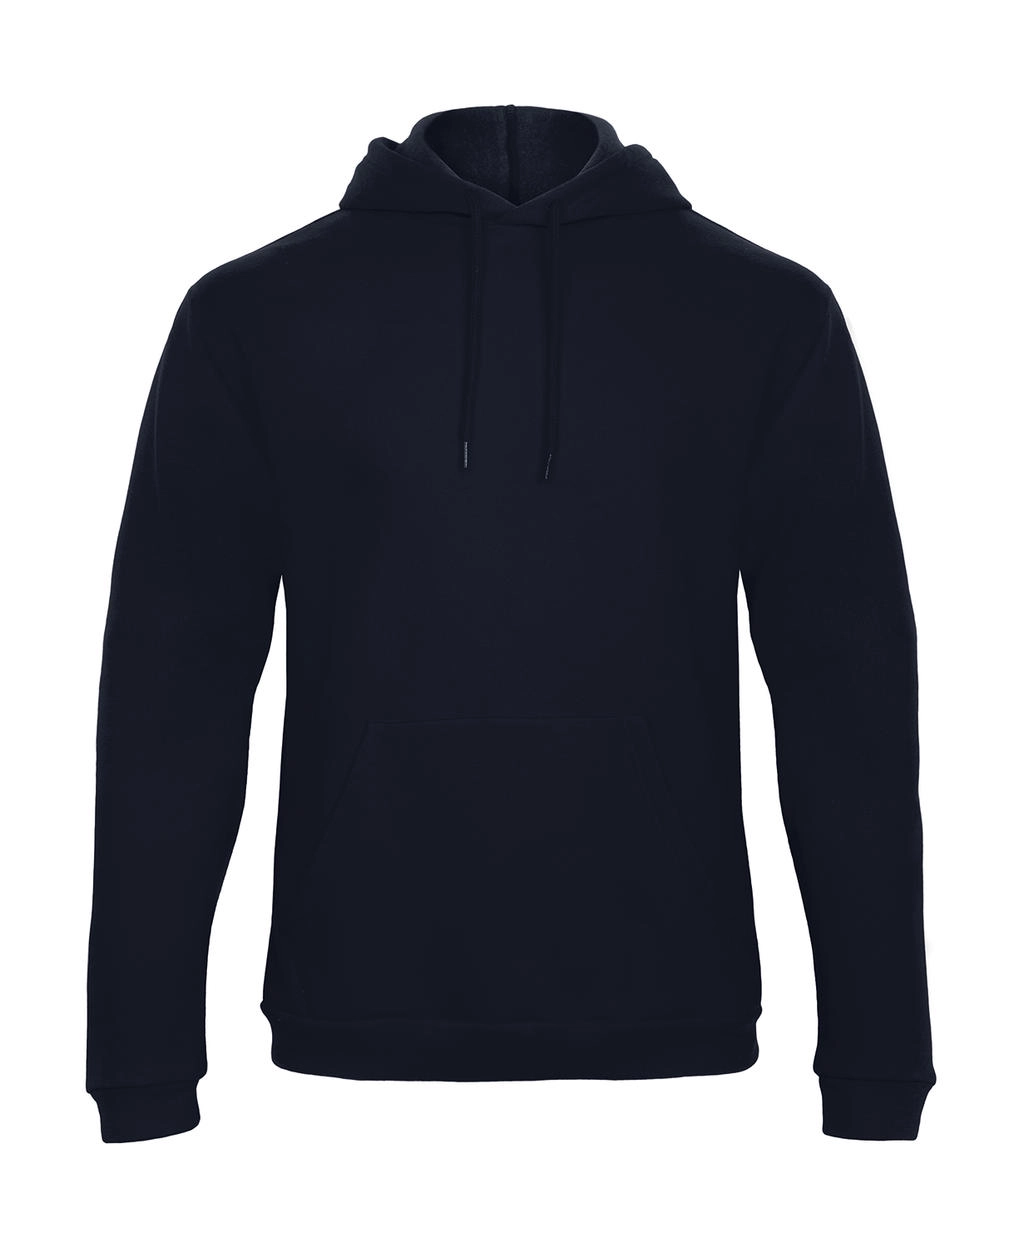 ID.203 50/50 Hooded Sweatshirt Unisex  zum Besticken und Bedrucken in der Farbe Navy mit Ihren Logo, Schriftzug oder Motiv.